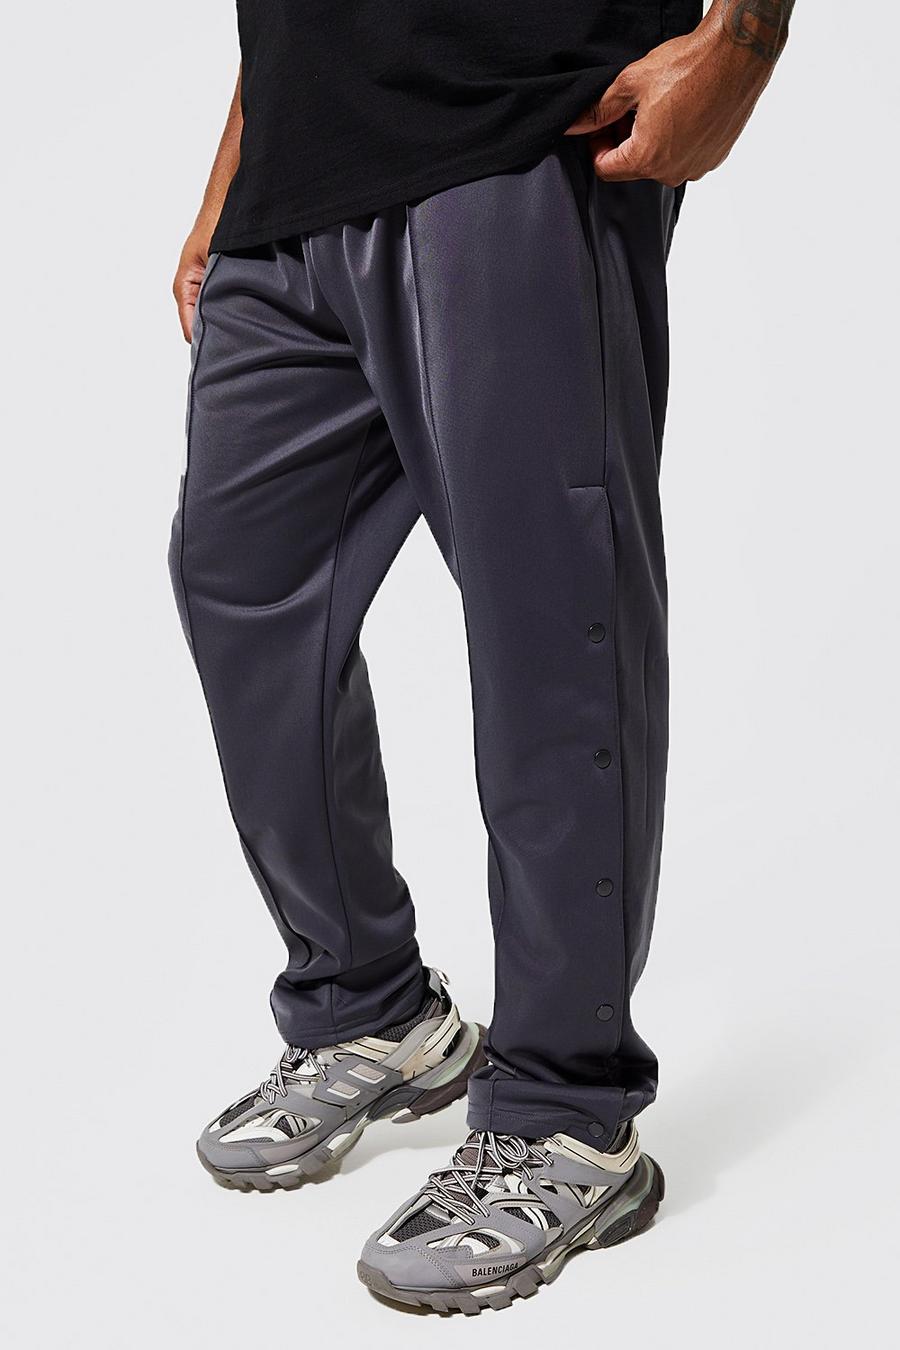 פחם grigio מכנסי ריצה בגזרה רגילה מטריקו עם תיקתקים מידות גדולות